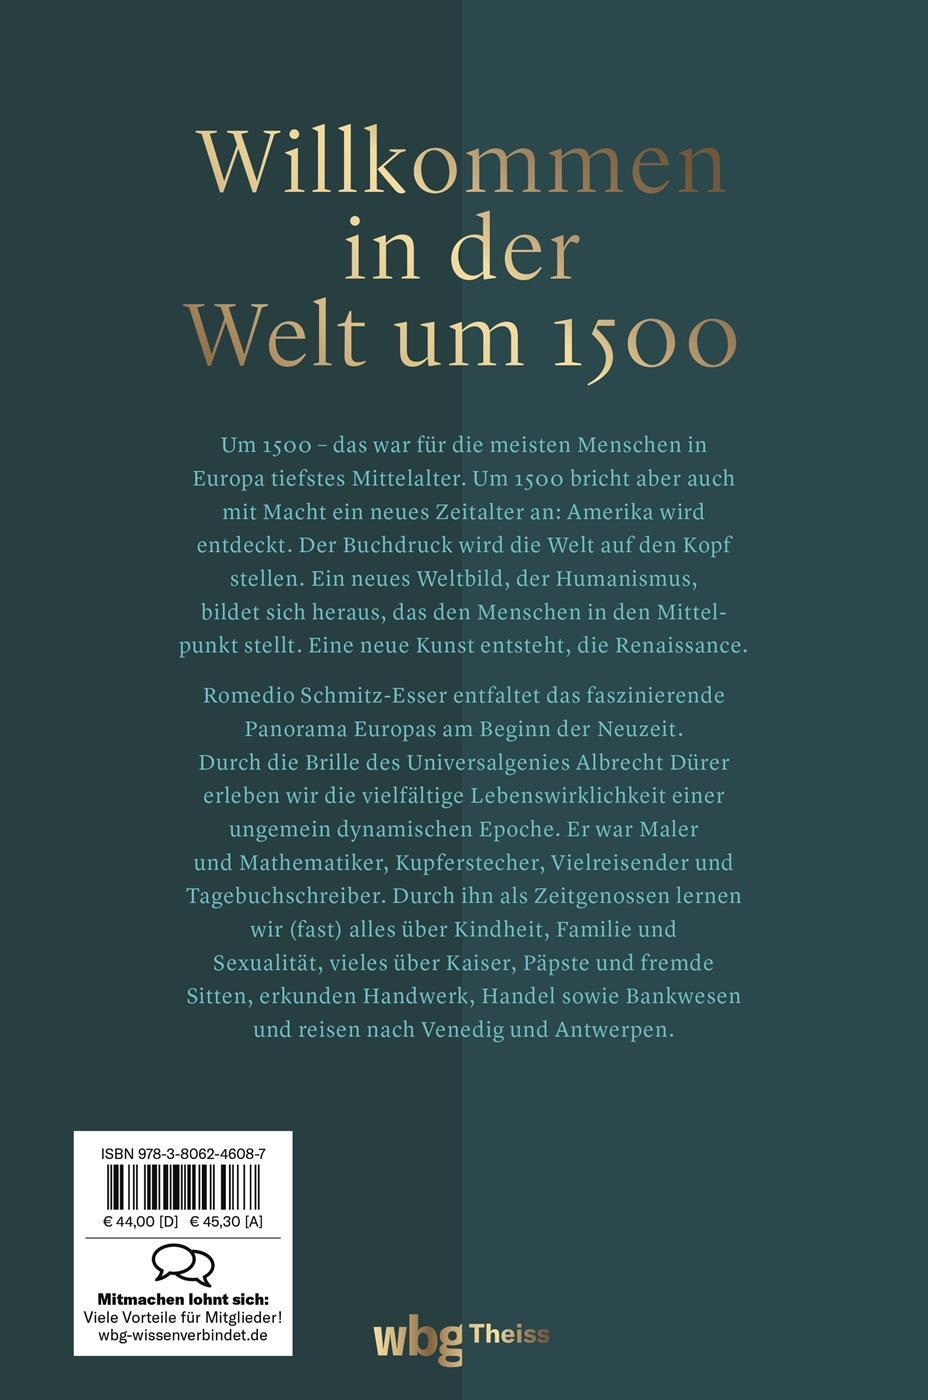 Rückseite: 9783806246087 | Um 1500 | Europa zur Zeit Albrecht Dürers | Romedio Schmitz-Esser